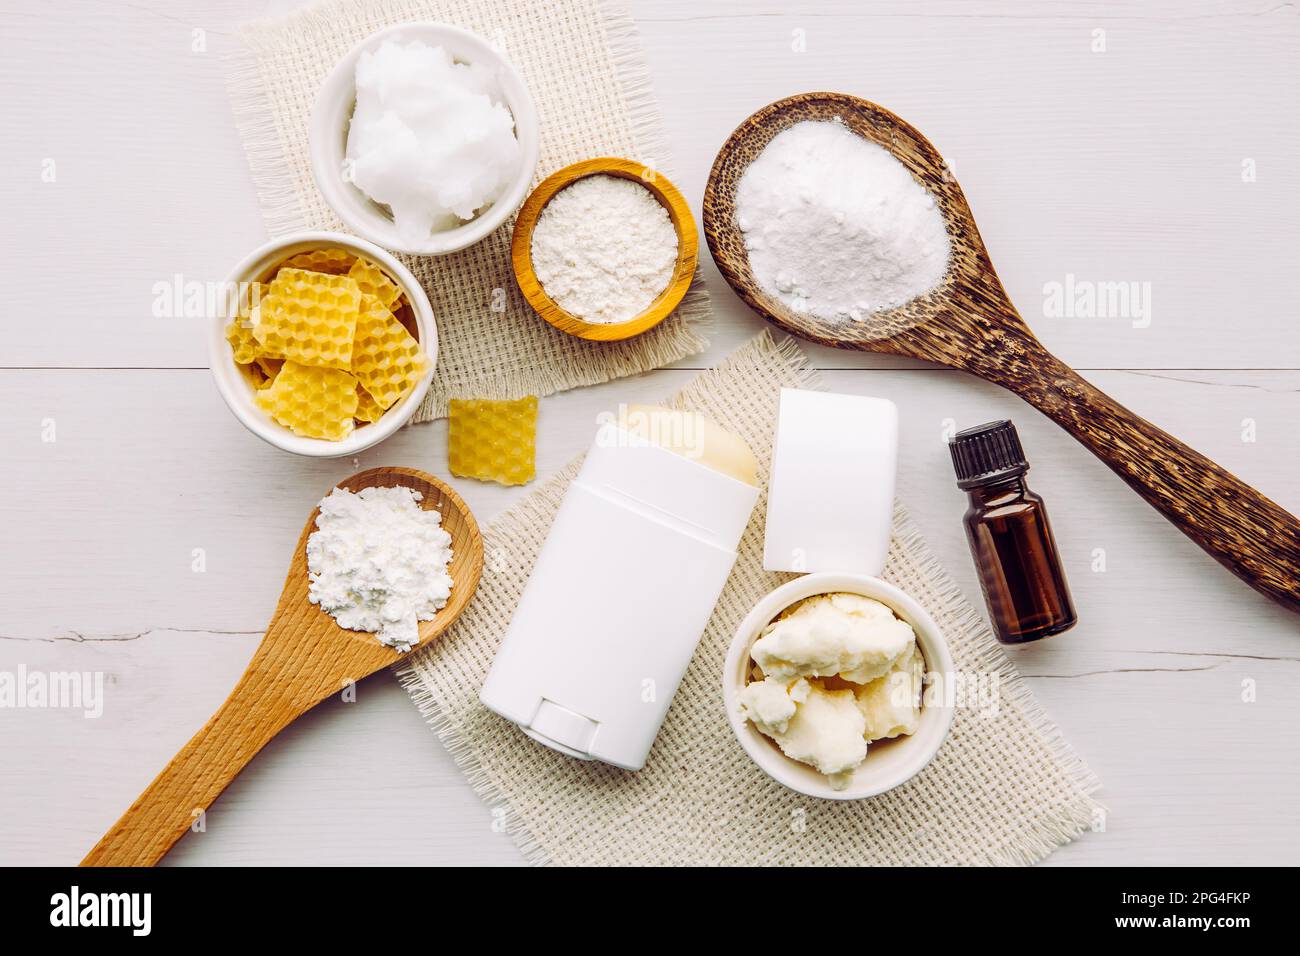 Fare deodoranti fatti in casa bastone con tutti gli ingredienti naturali concetto. Sfondo di legno bianco. Ingredienti: Polvere di arrowroot, bicarbonato, cera d'api. Foto Stock